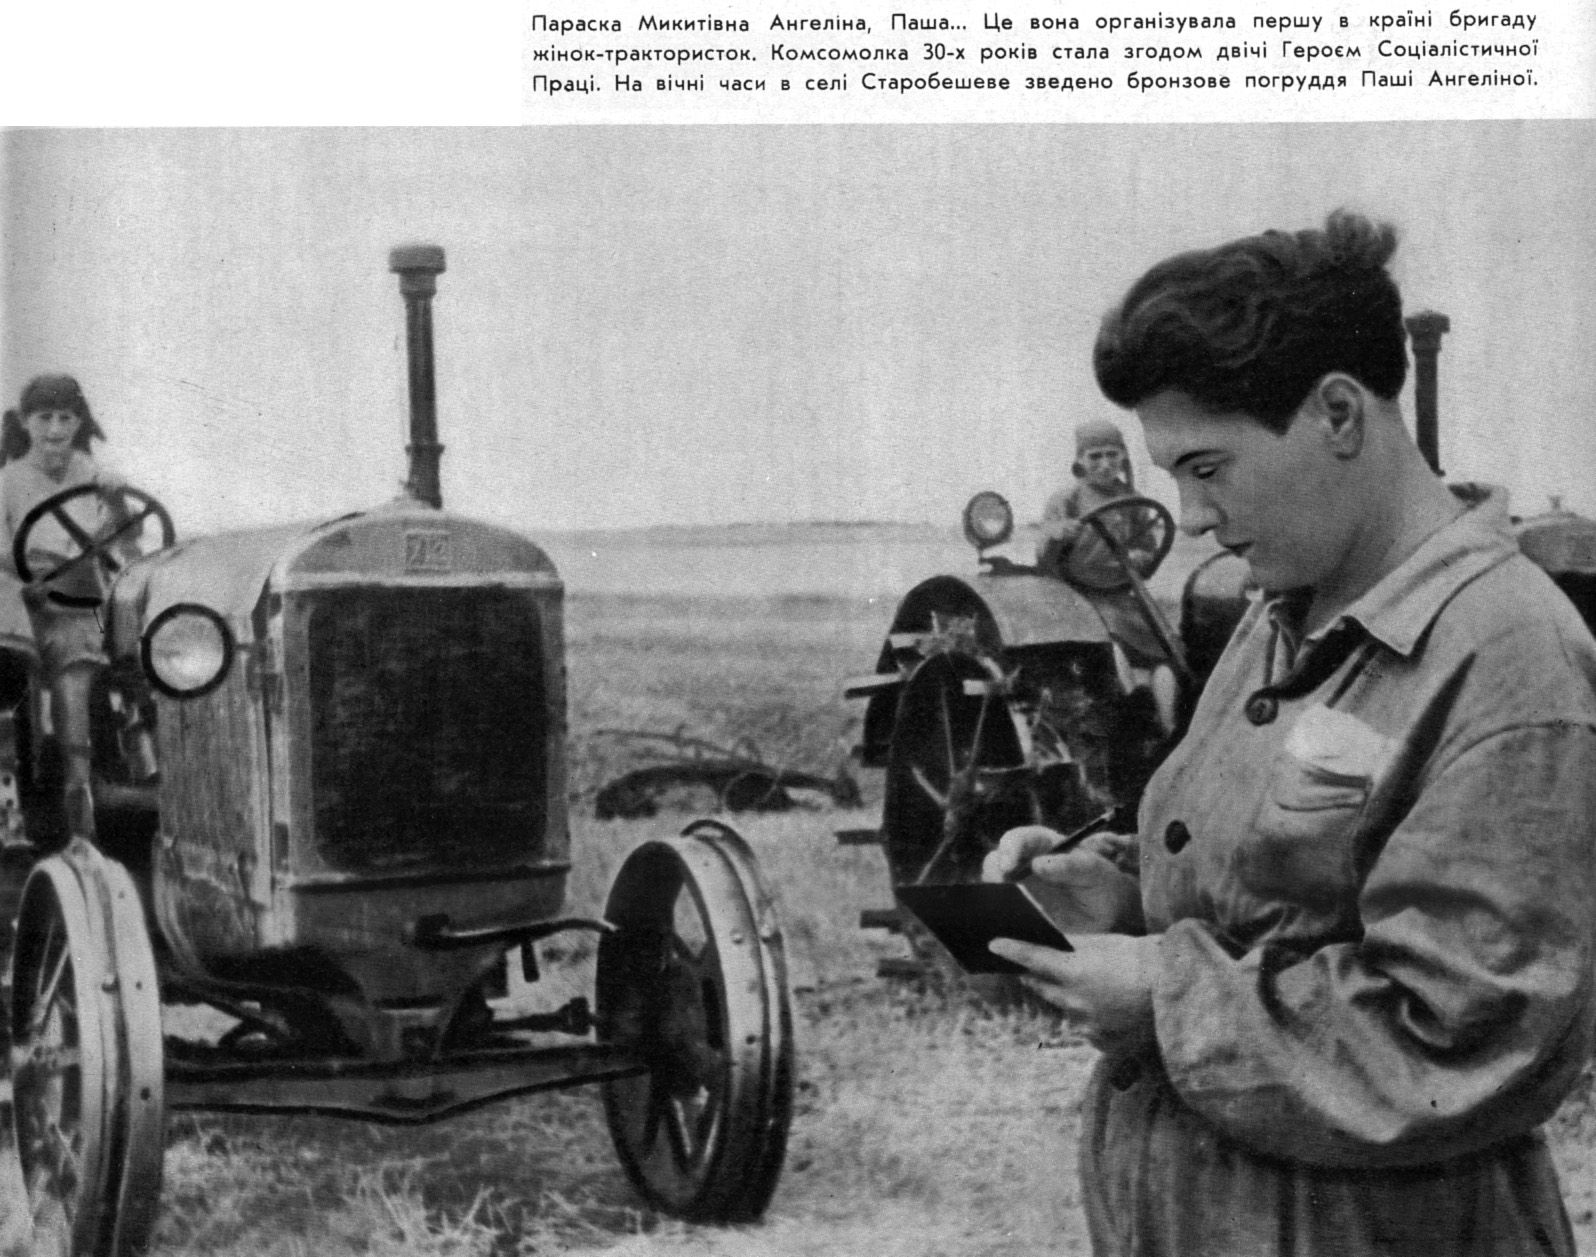 Создание первой в ссср женской тракторной. Тракторная бригада Паши Ангелиной.